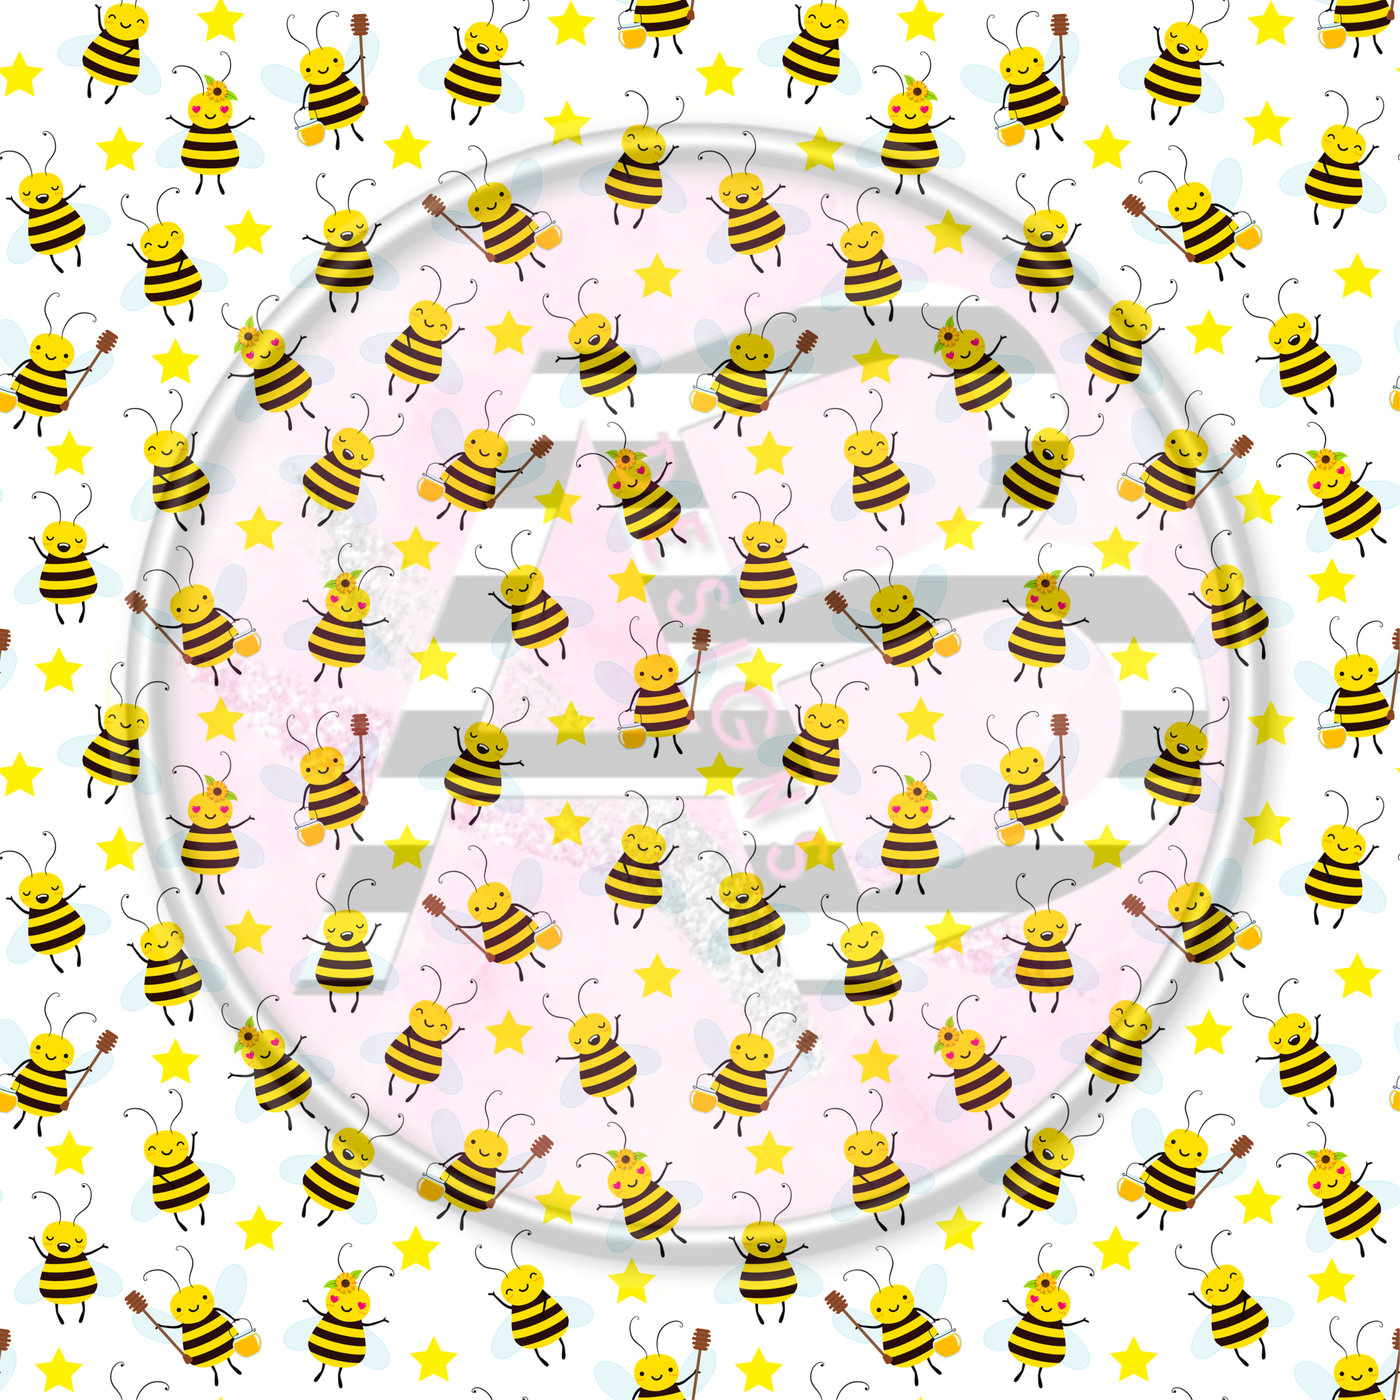 Adhesive Patterned Vinyl - Honey Bee 11